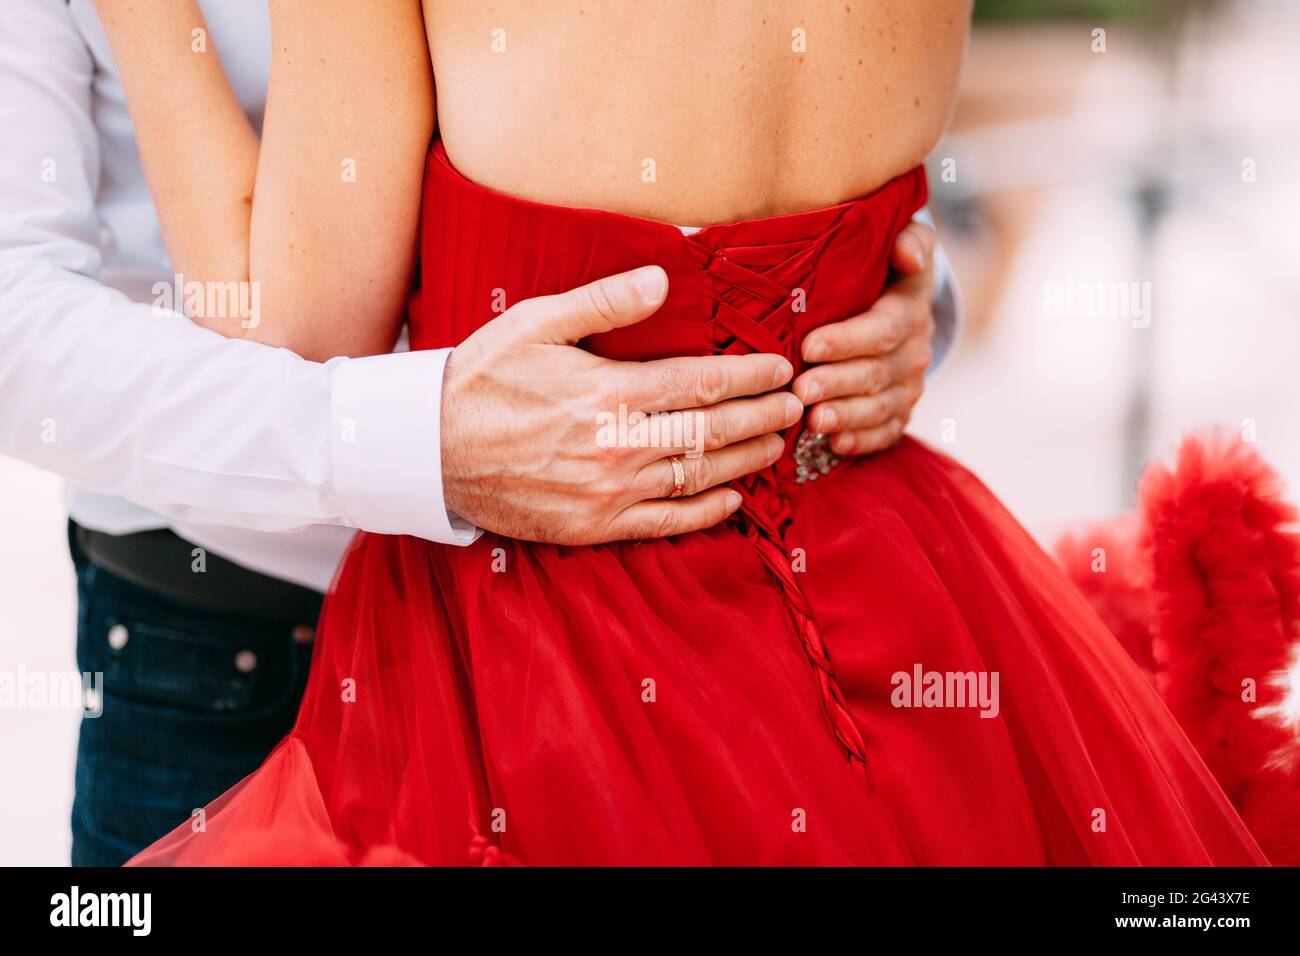 Die Hände des Mannes umarmen die Taille einer Frau in einem roten gekleidet Kleid Stockfoto